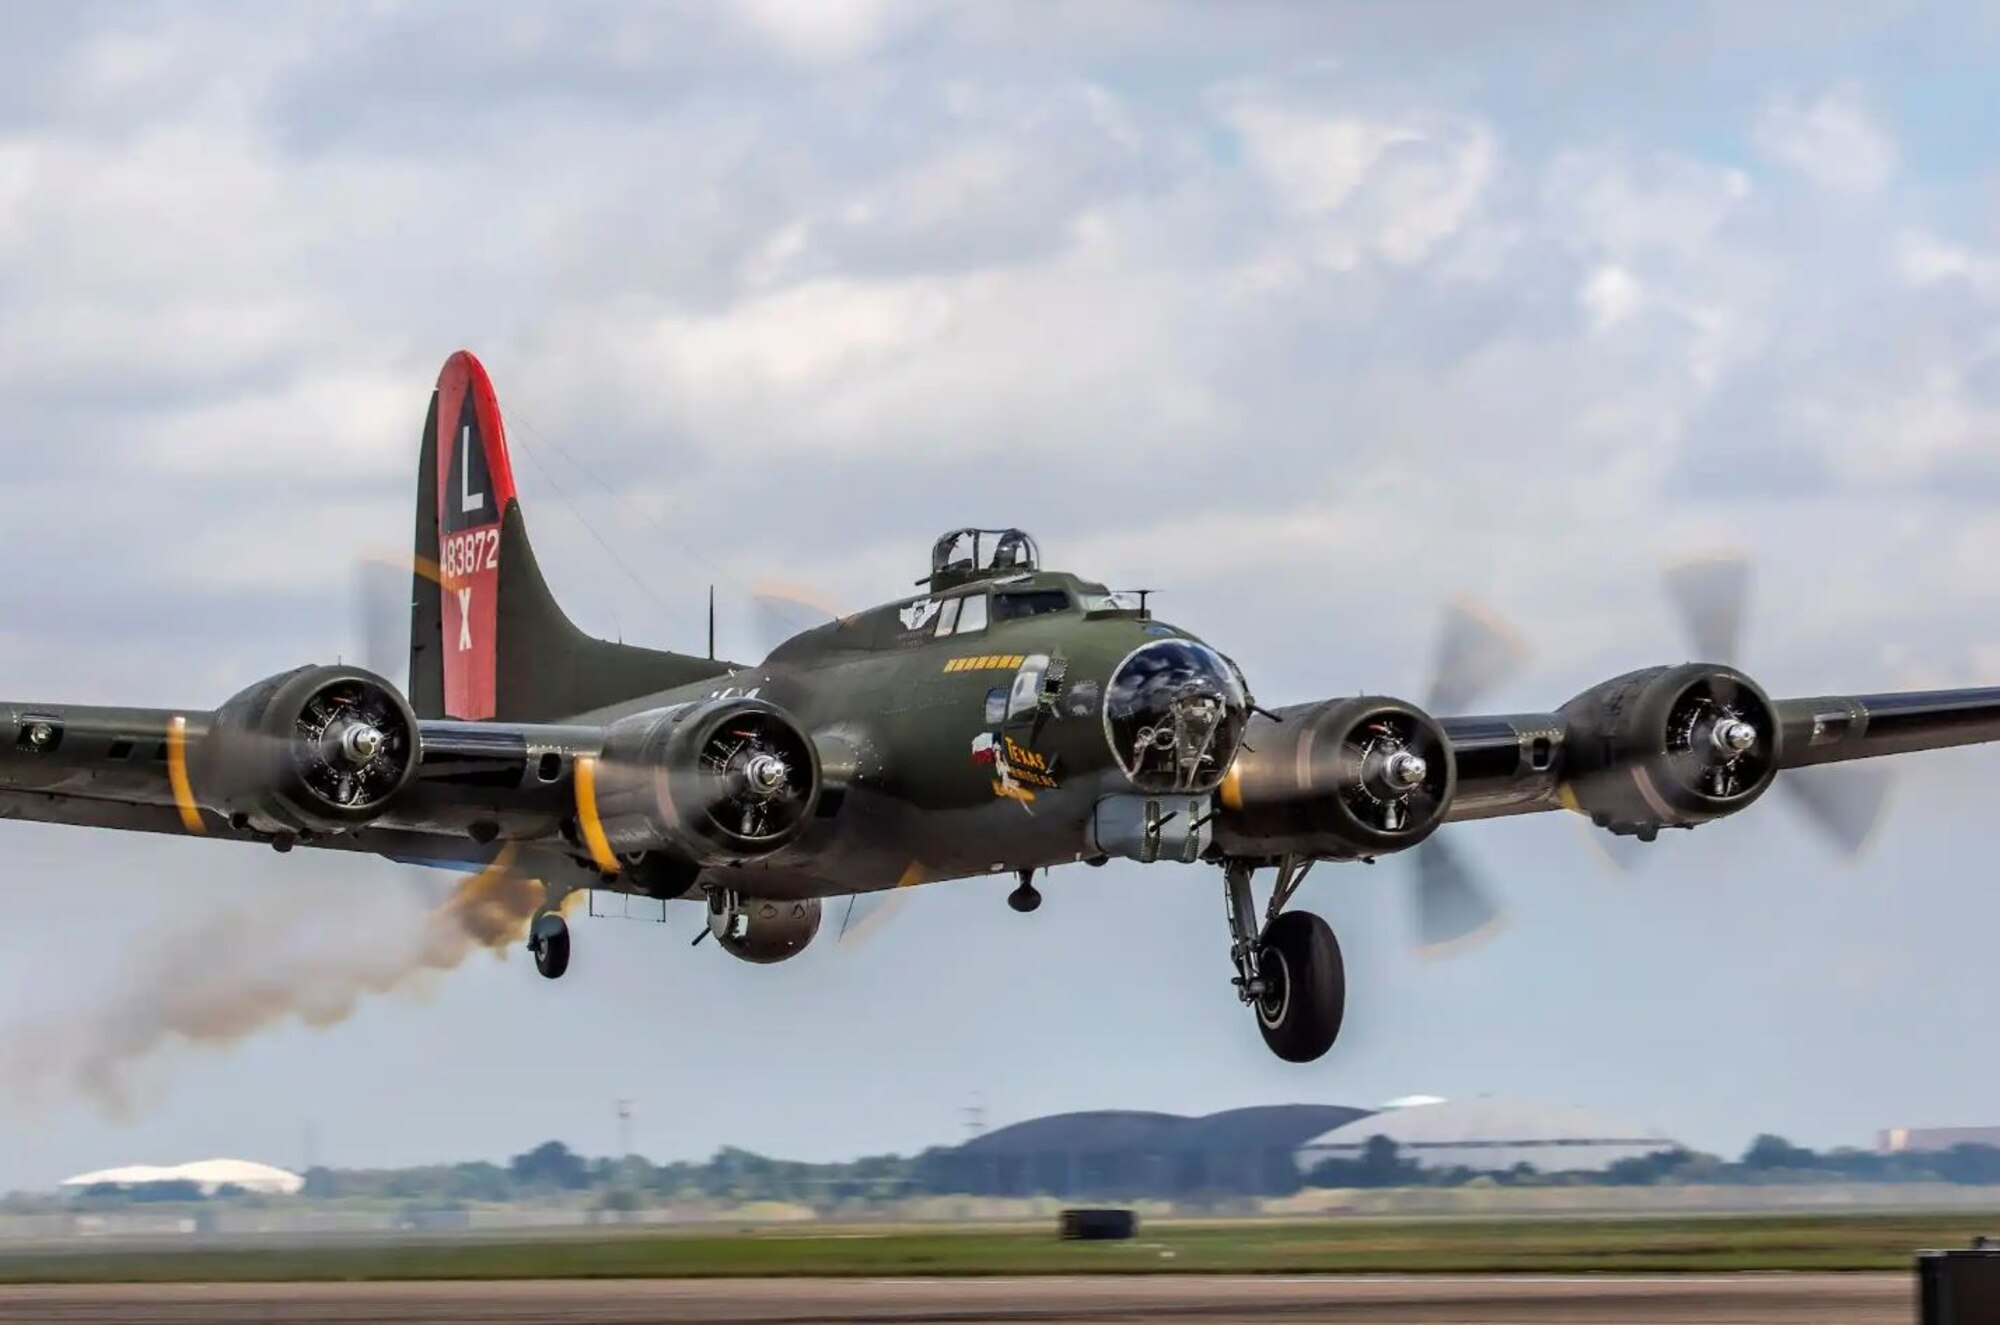 B-17 “Flying Fortress” (Texas Raiders)